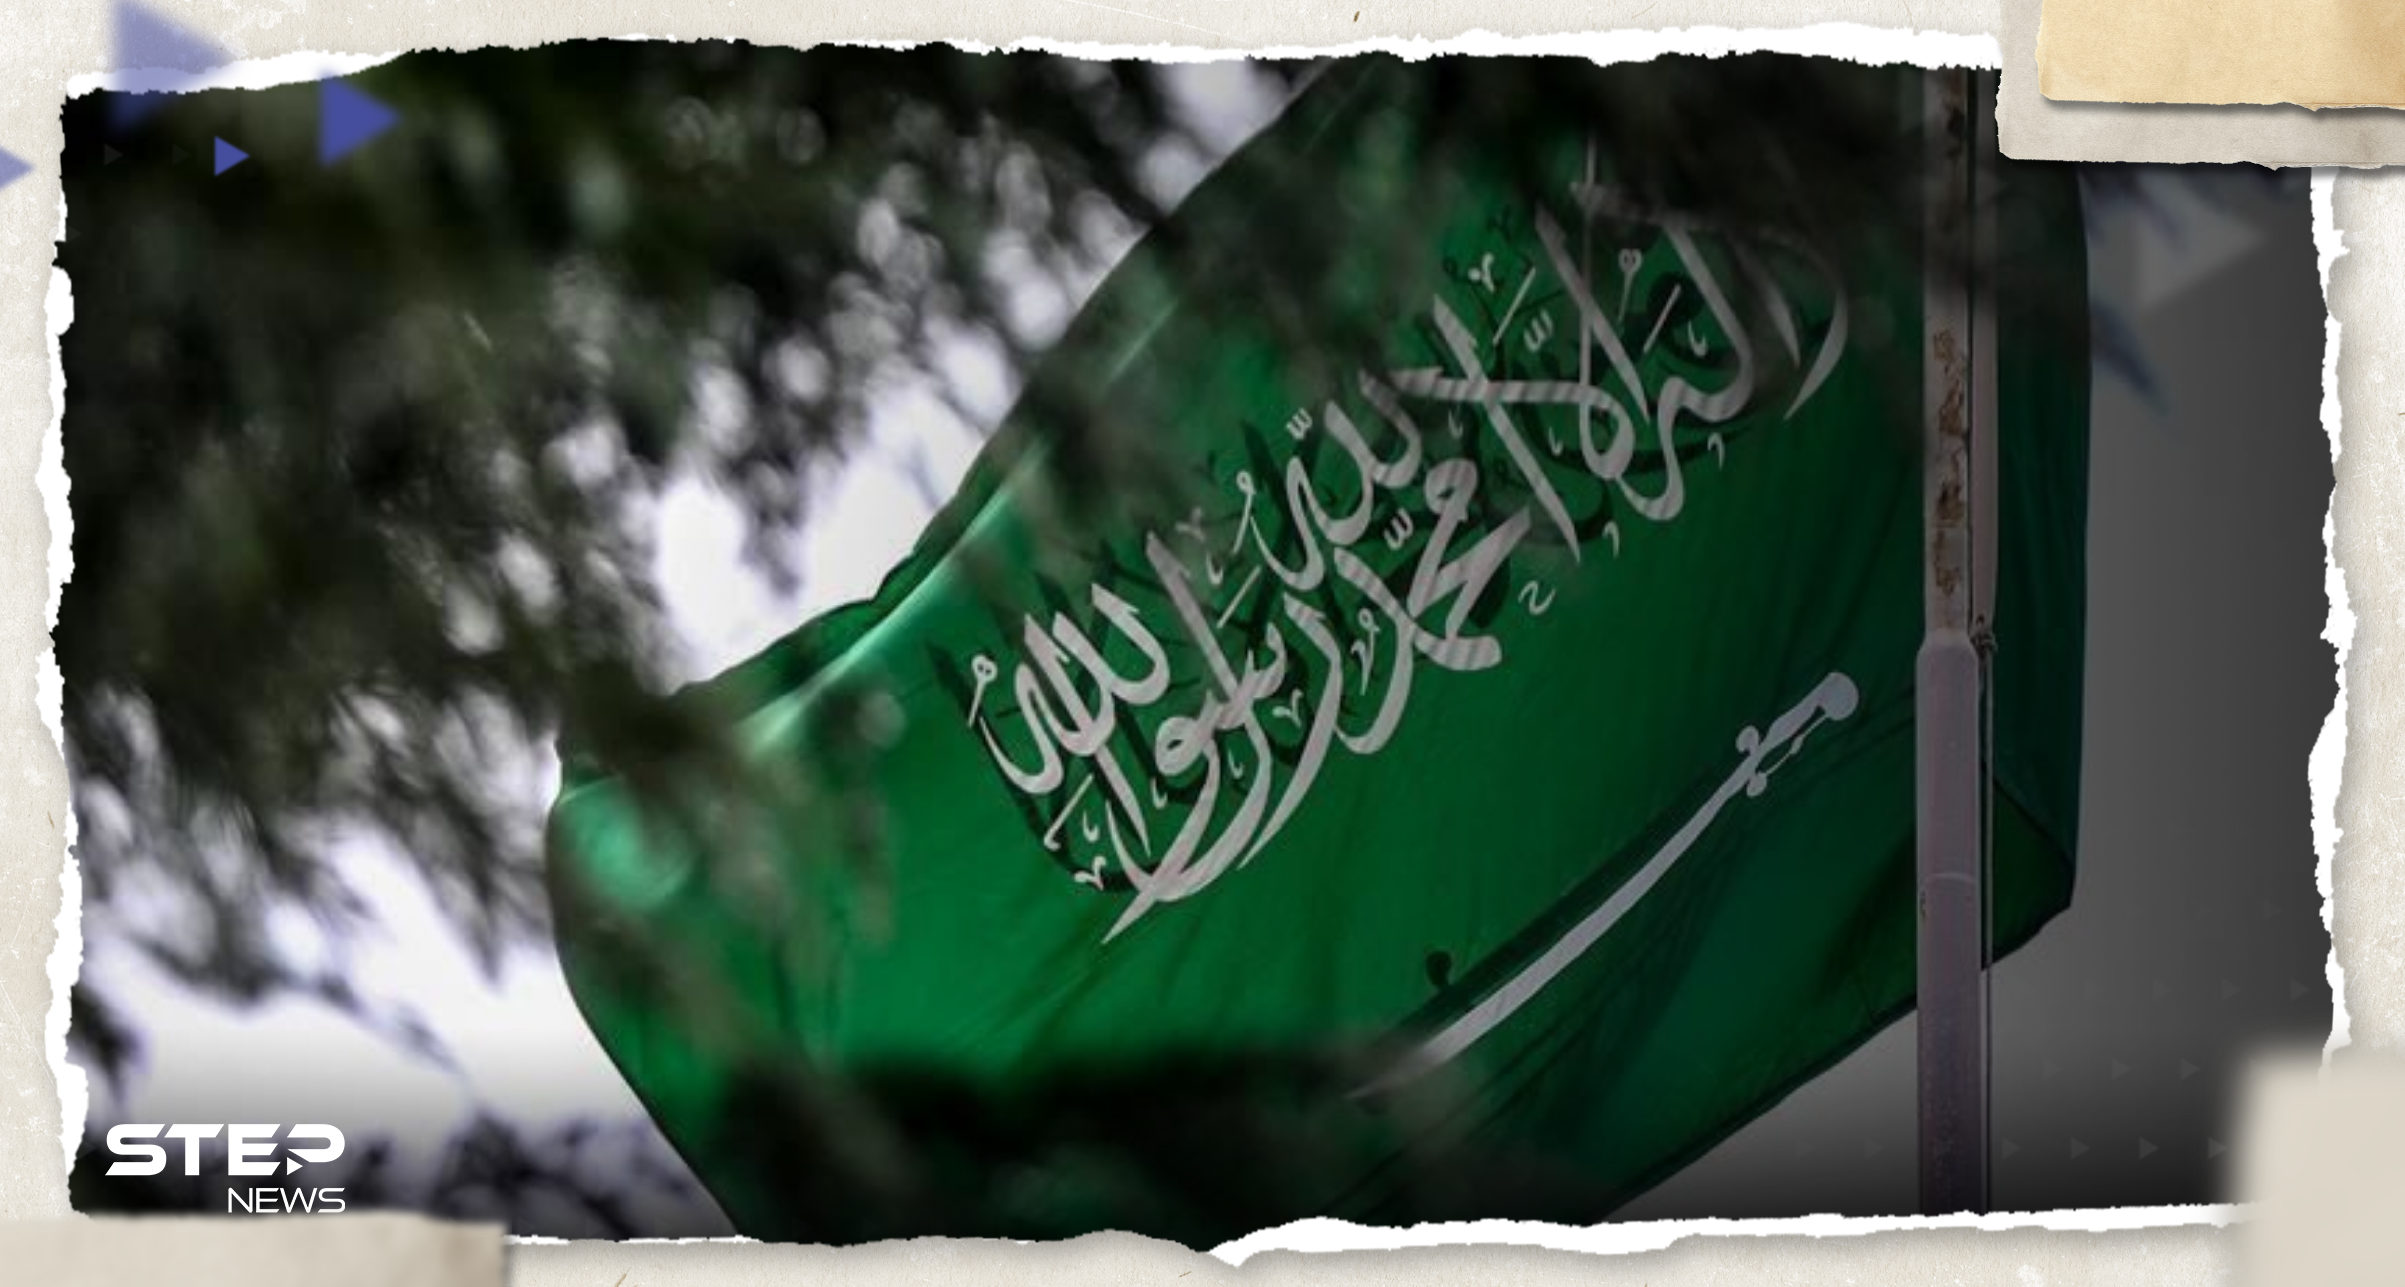 هل ستستخدم السعودية "ورقة النفط" للضغط على إسرائيل.. بيان رسمي يحمل الإجابة